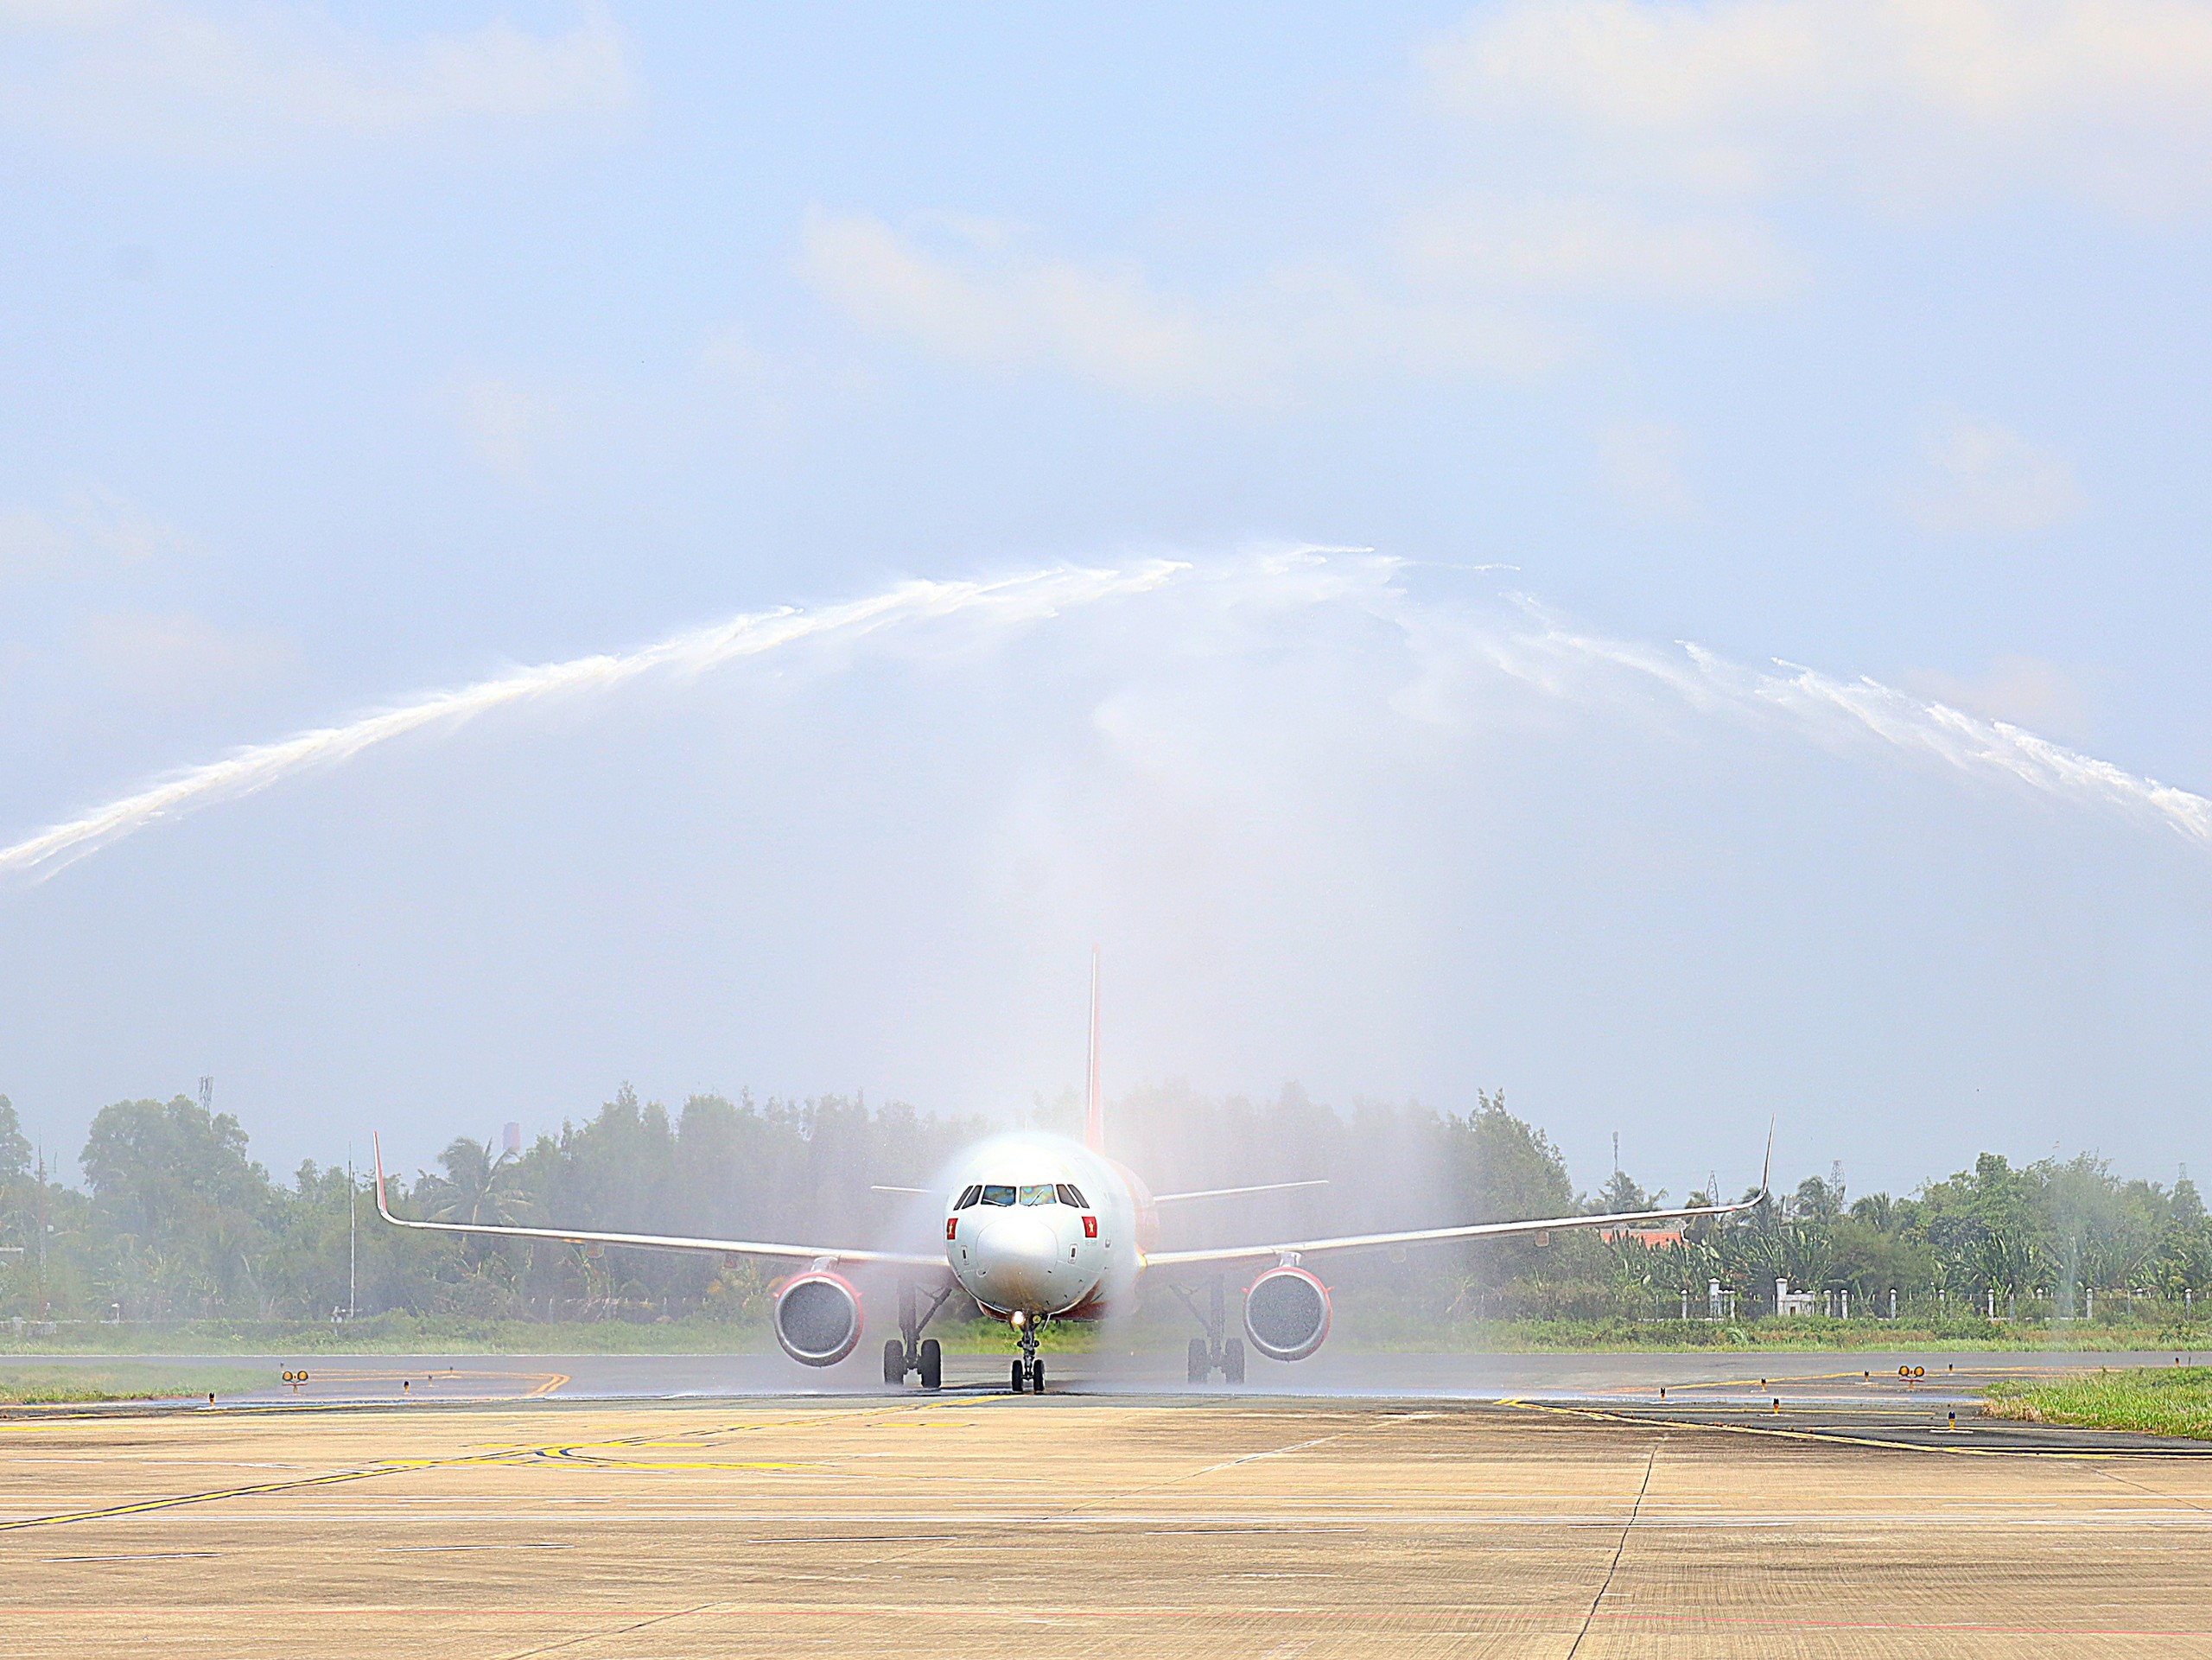 Thực hiện nghi thức phun nước chào đón chuyến bay đầu tiên cất cánh từ Cảng hàng không quốc tế Vân Đồn (Quảng Ninh) hạ cánh xuống Cảng hàng không quốc tế Cần Thơ.